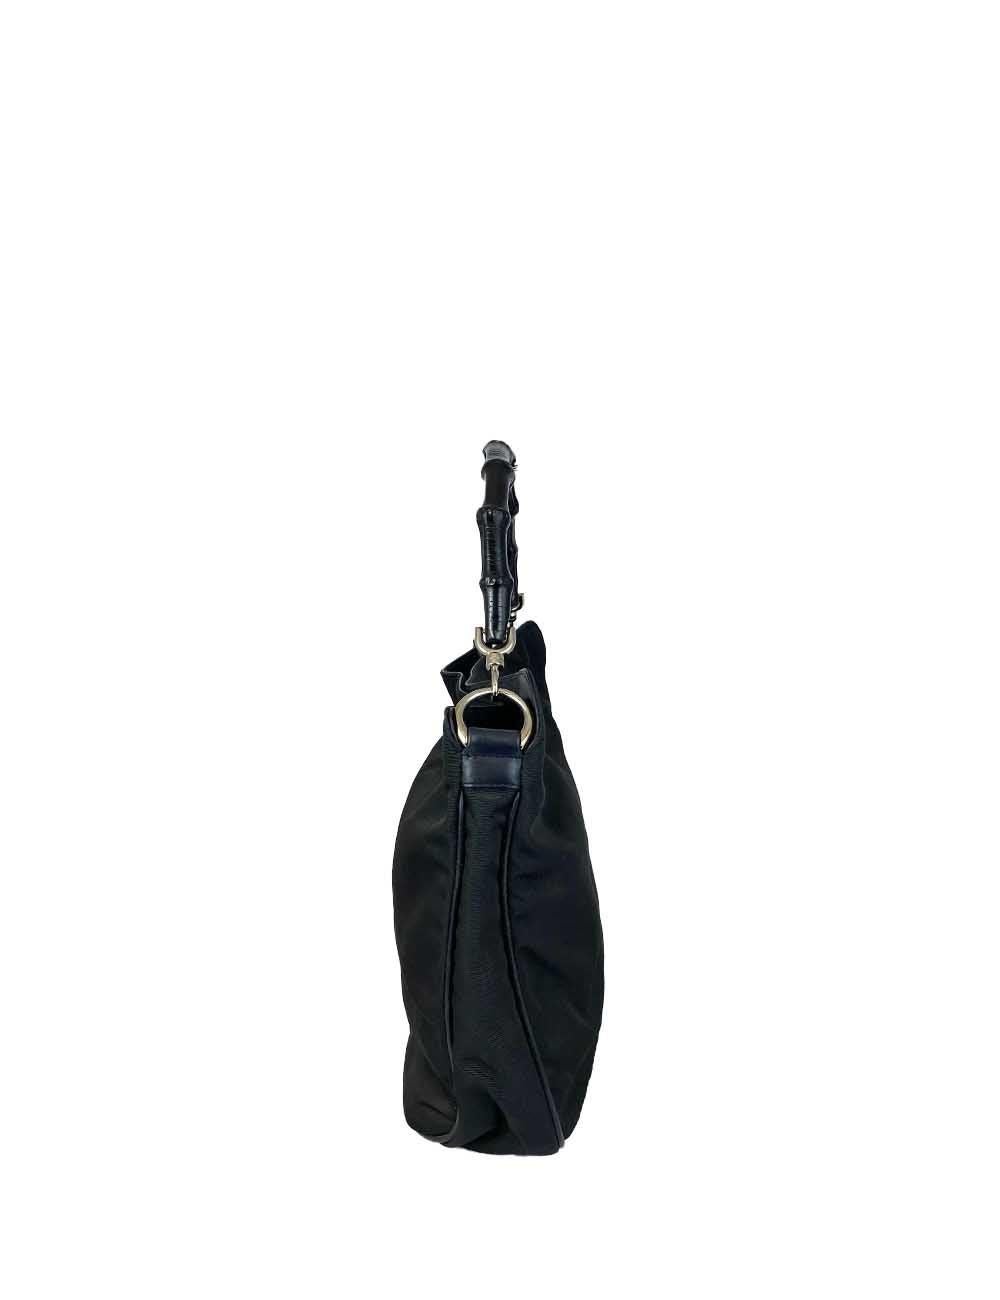 Schwarze Gucci-Henkeltasche aus Nylon mit schwarzem Bambusgriff und silberner Hardware. Eine Reißverschlusstasche auf der Innenseite und ein Lederboden. 

Zusätzliche Informationen:
MATERIAL: Nylon
Hardware: Silber
Abmessungen: 30 B x 5 T x 26 H